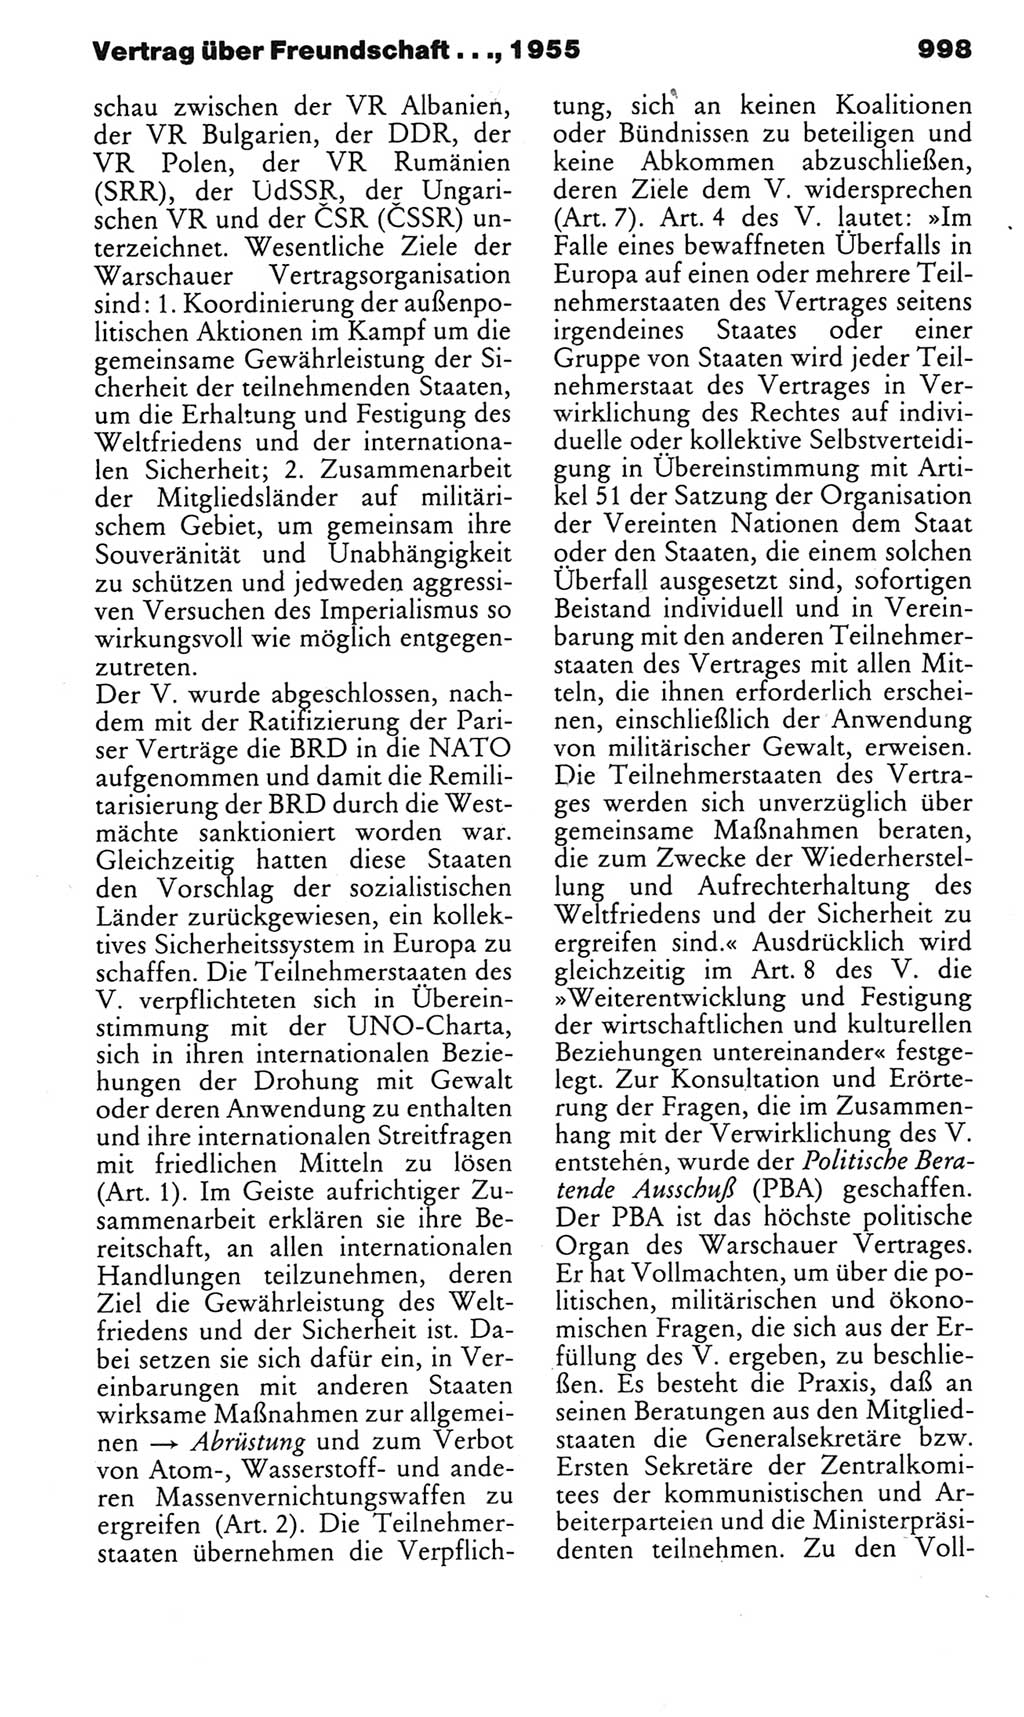 Kleines politisches Wörterbuch [Deutsche Demokratische Republik (DDR)] 1983, Seite 998 (Kl. pol. Wb. DDR 1983, S. 998)